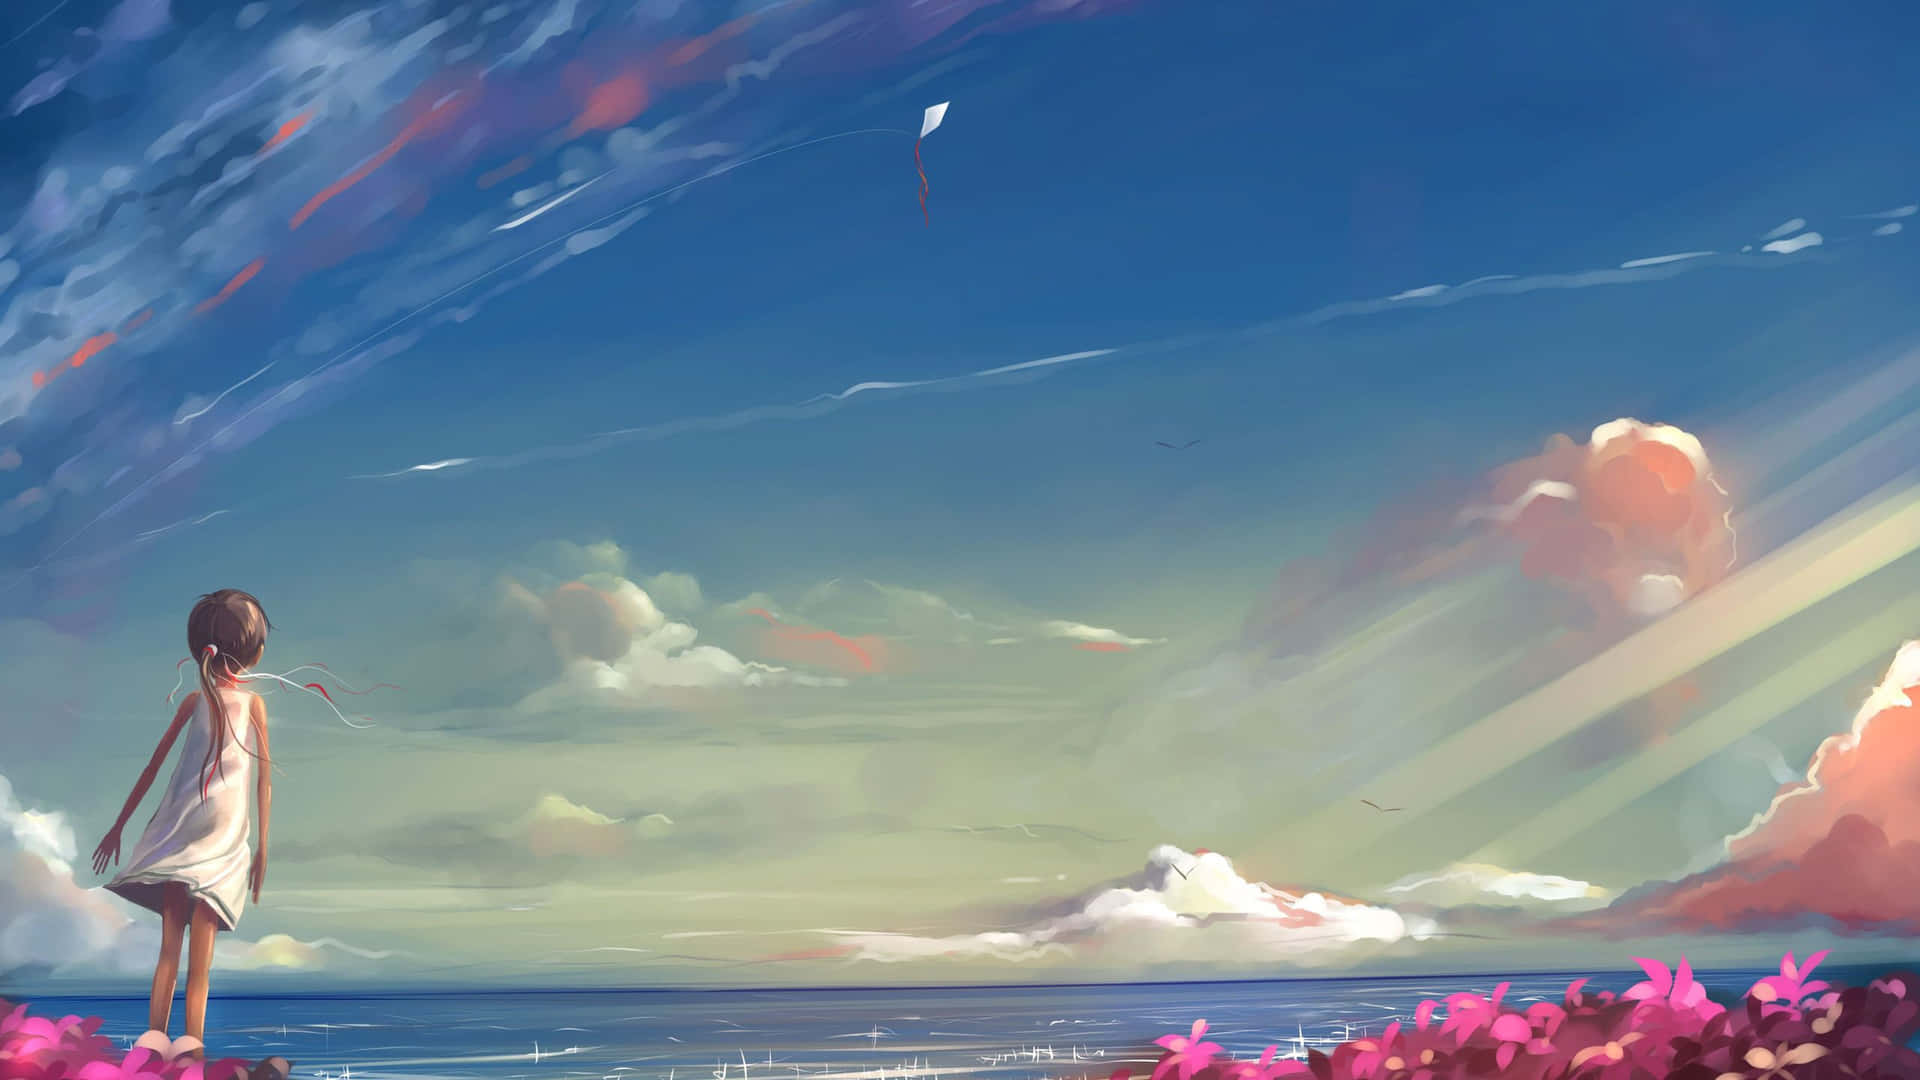 Anime Himmel 2560 X 1440 Wallpaper